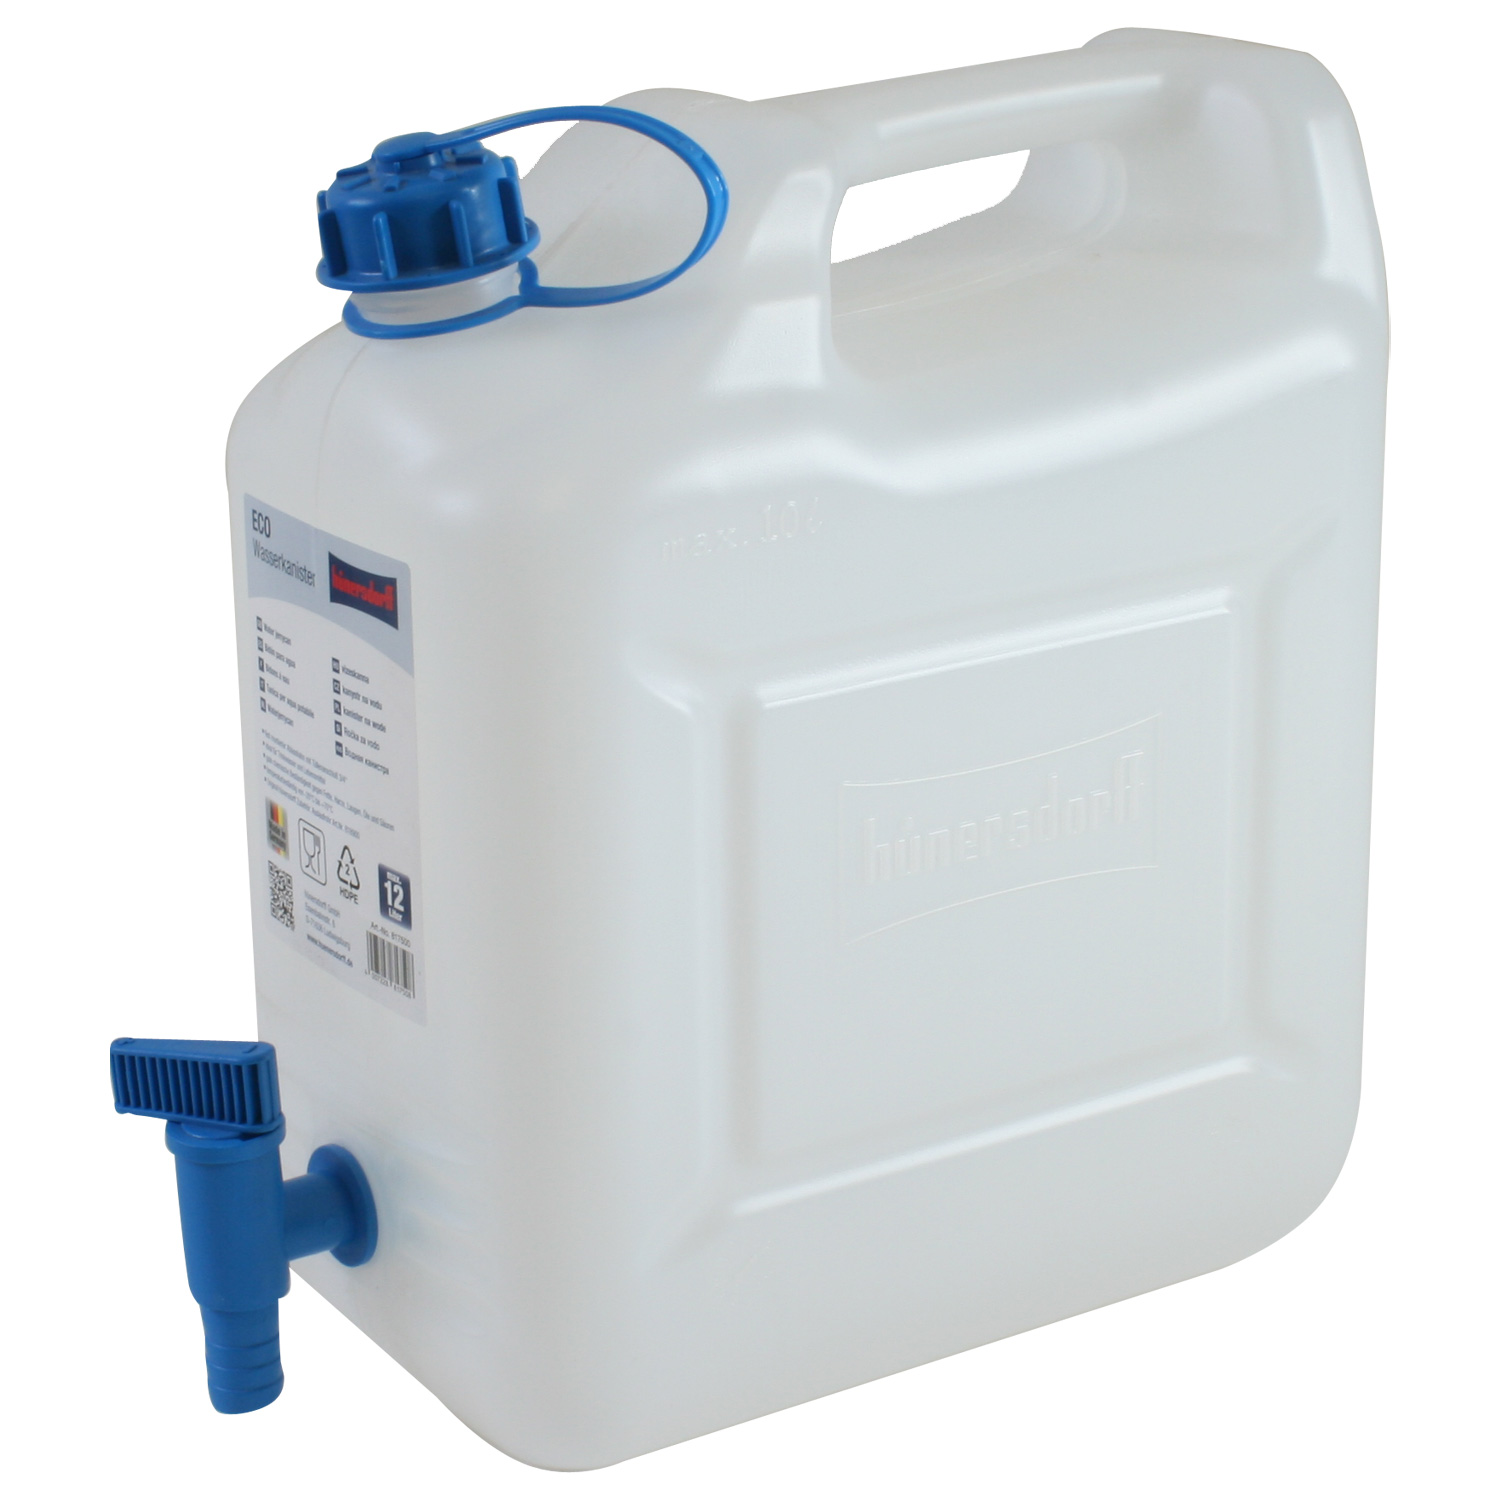 Wasserkanister ECO 10 Liter mit Hahn